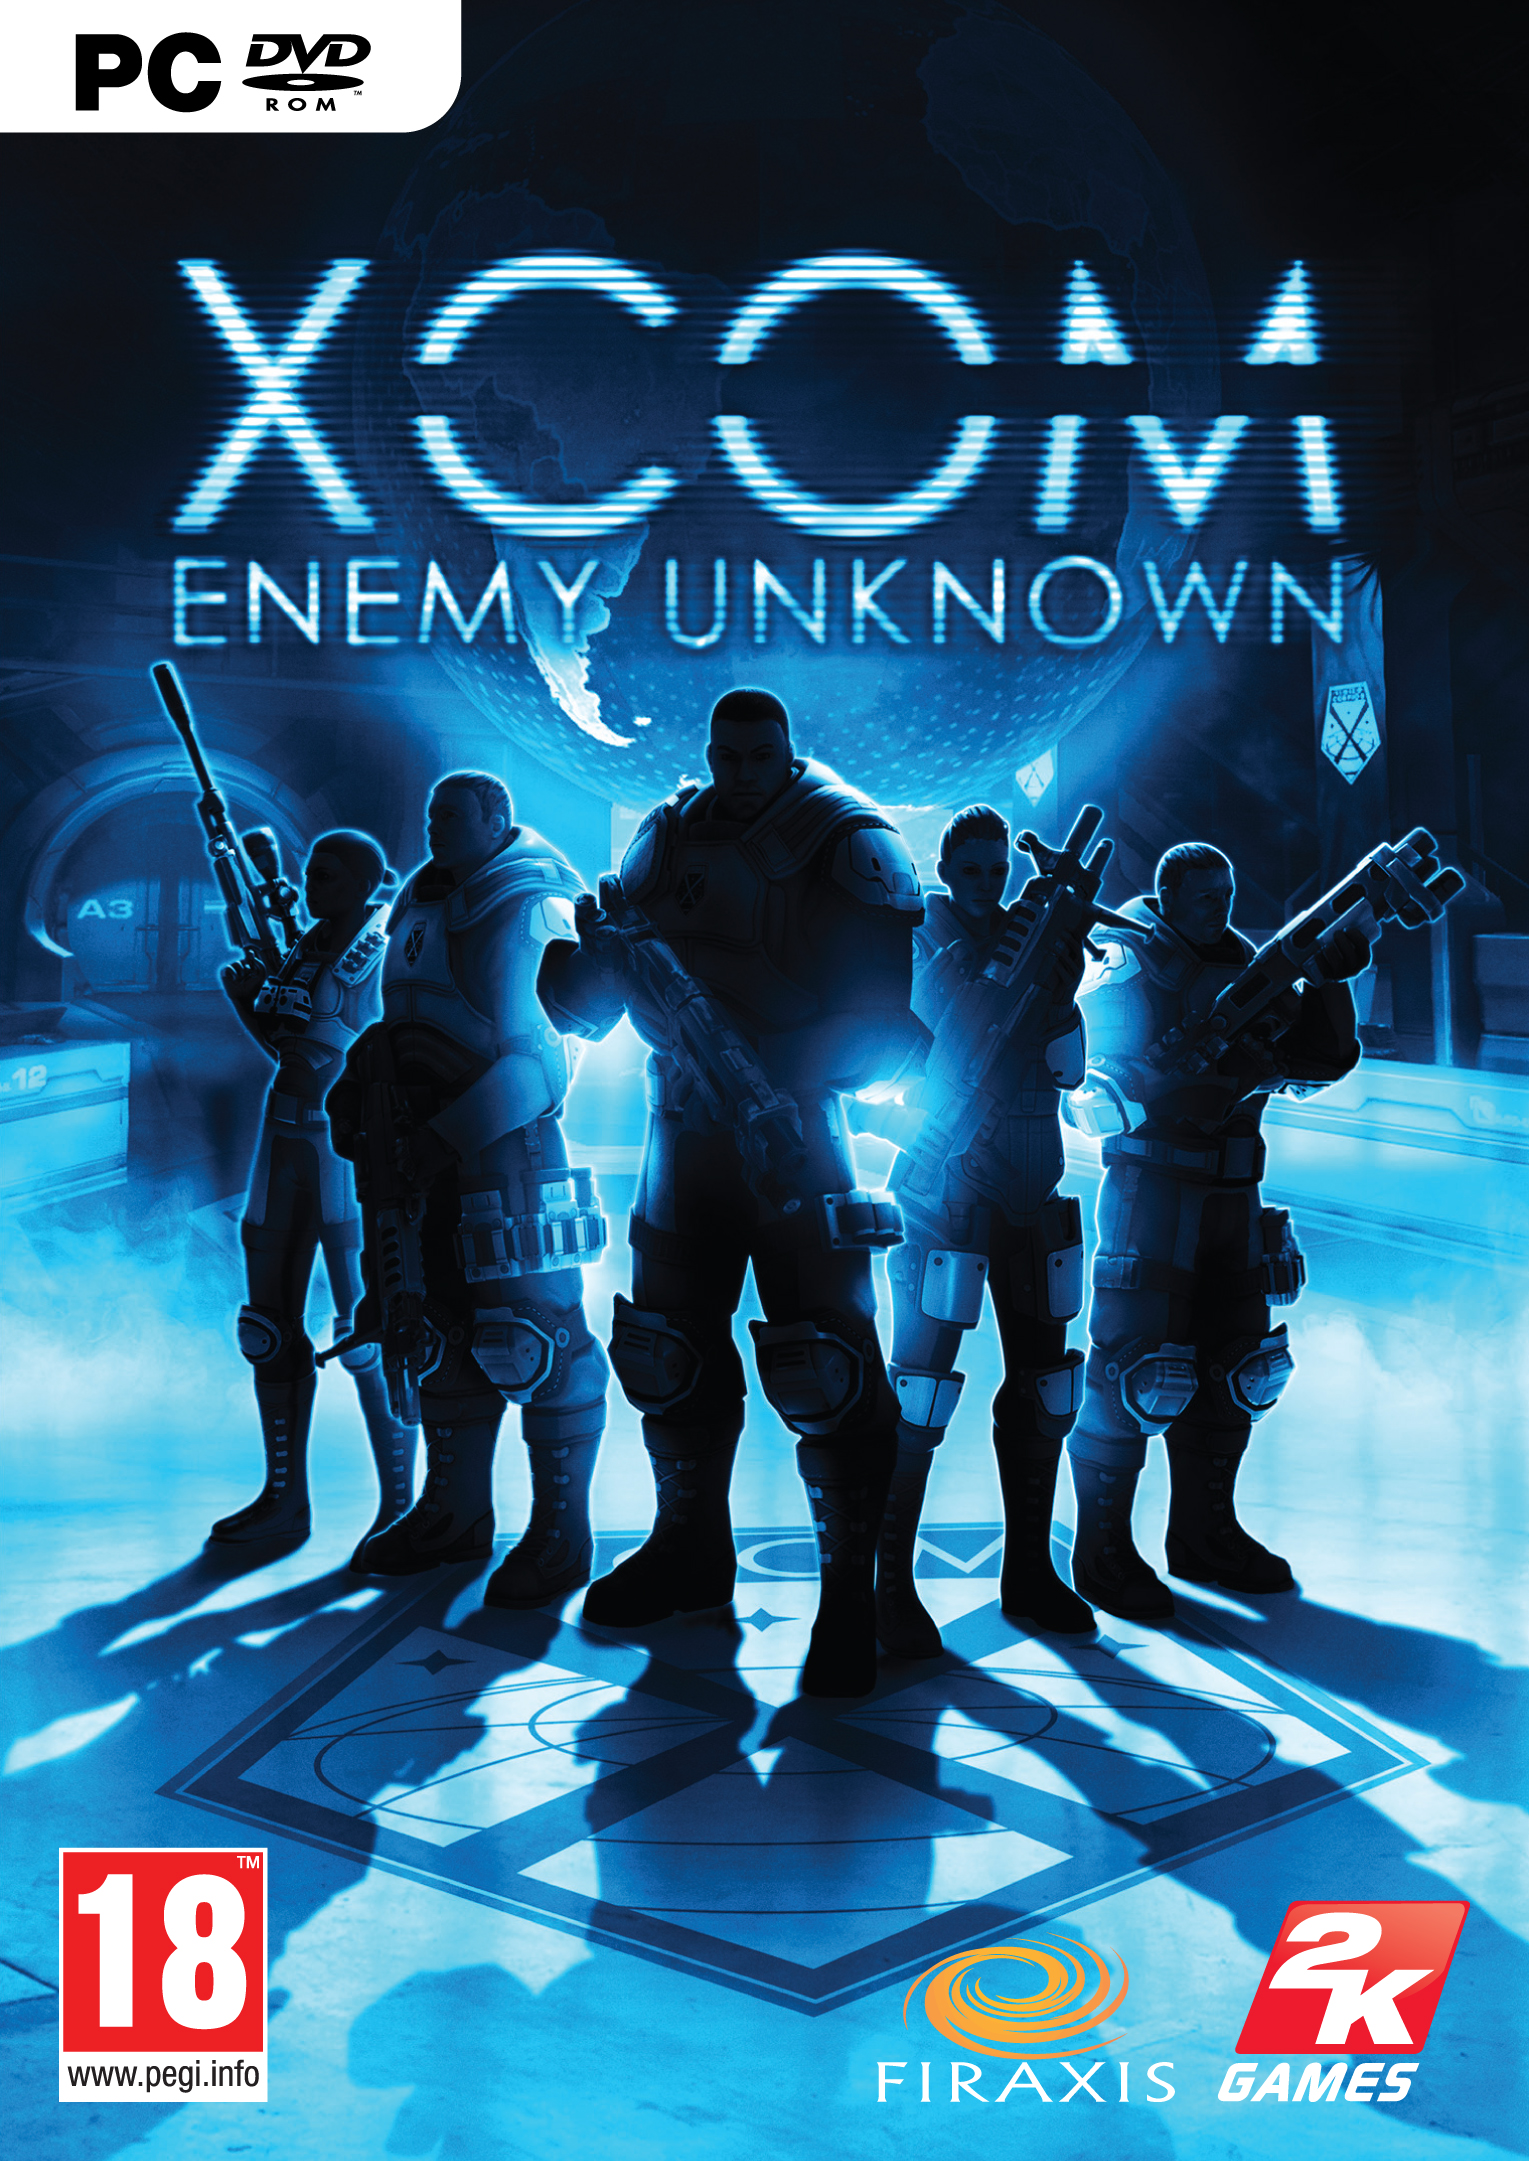 XCOM: Enemy Unknown #24